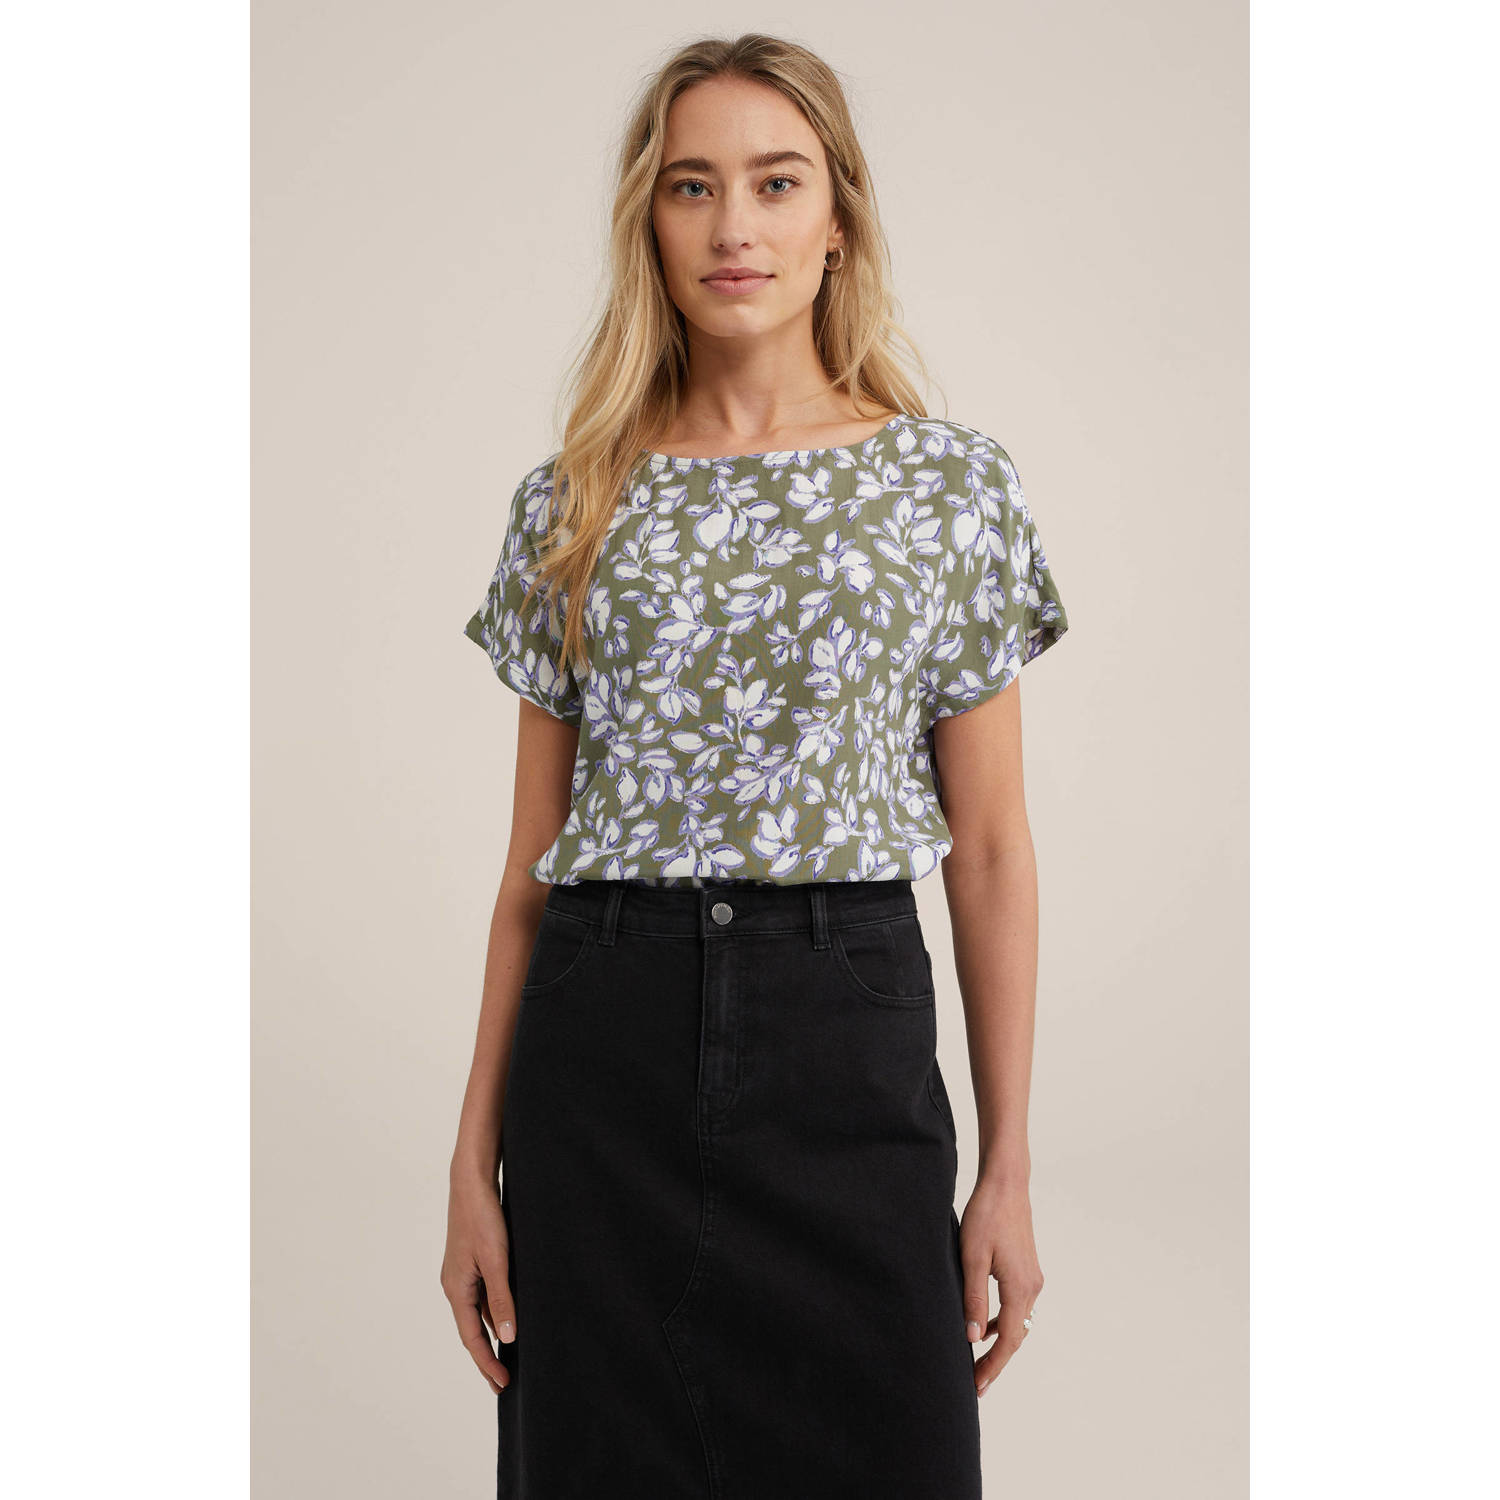 WE Fashion blousetop met all over print olijfgroen ecru lila